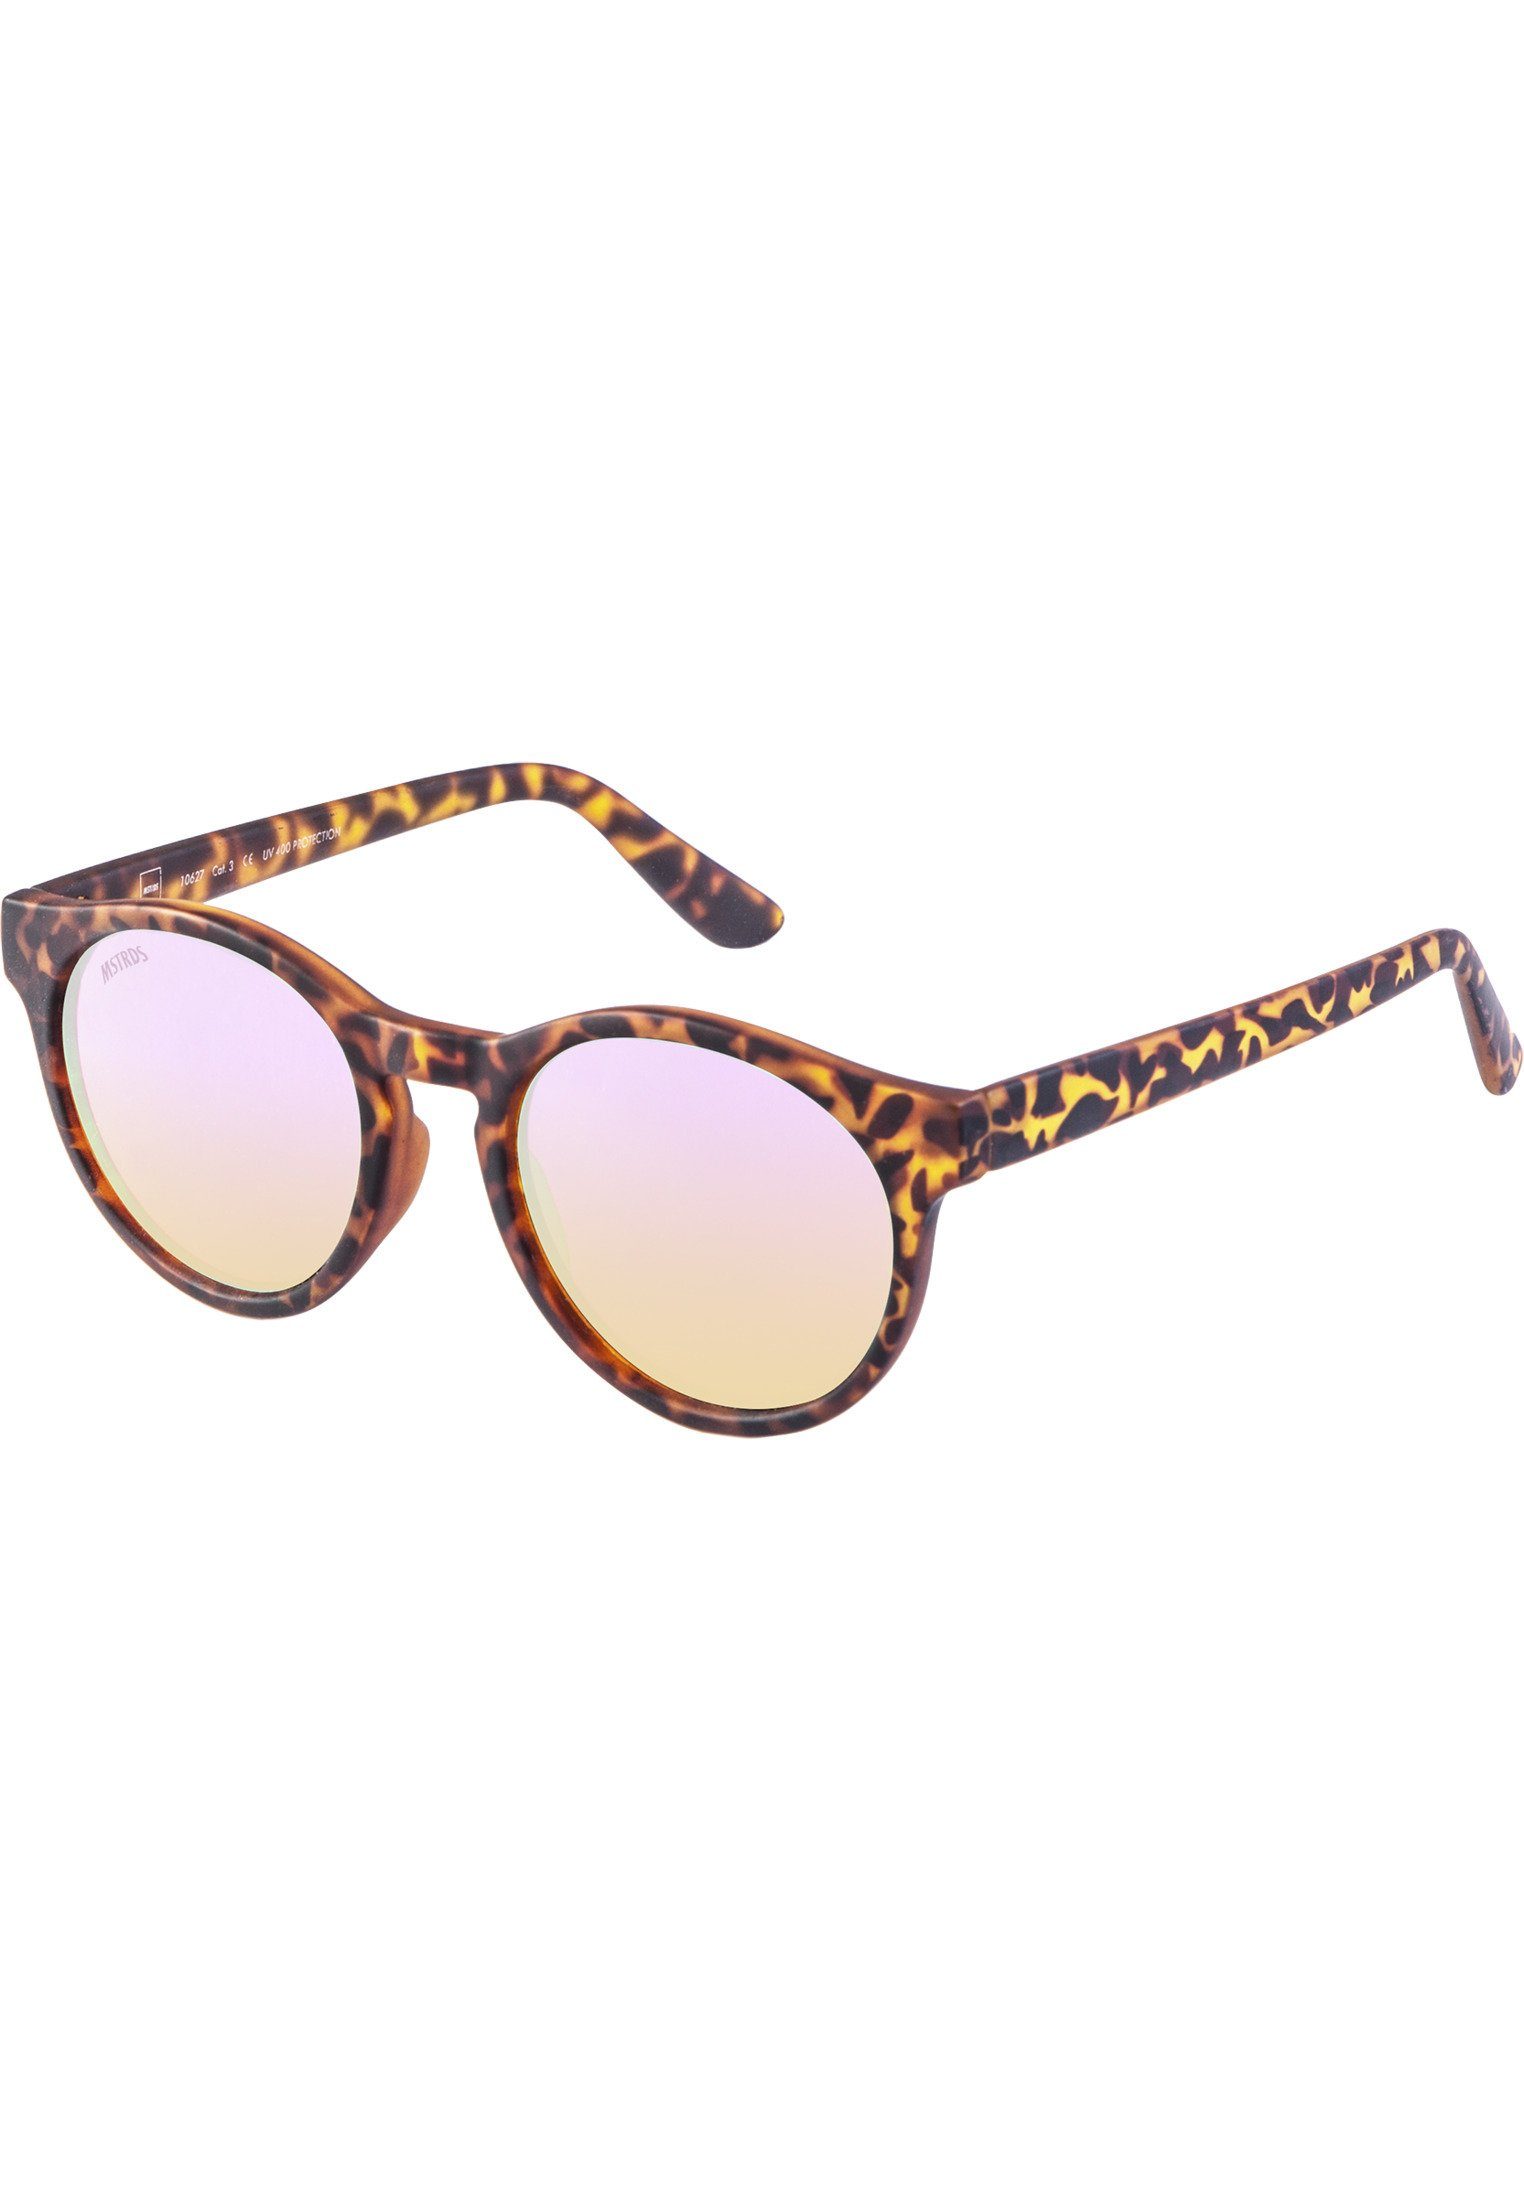 Sunglasses Sonnenbrille Sunrise Accessoires MSTRDS havanna/rosé